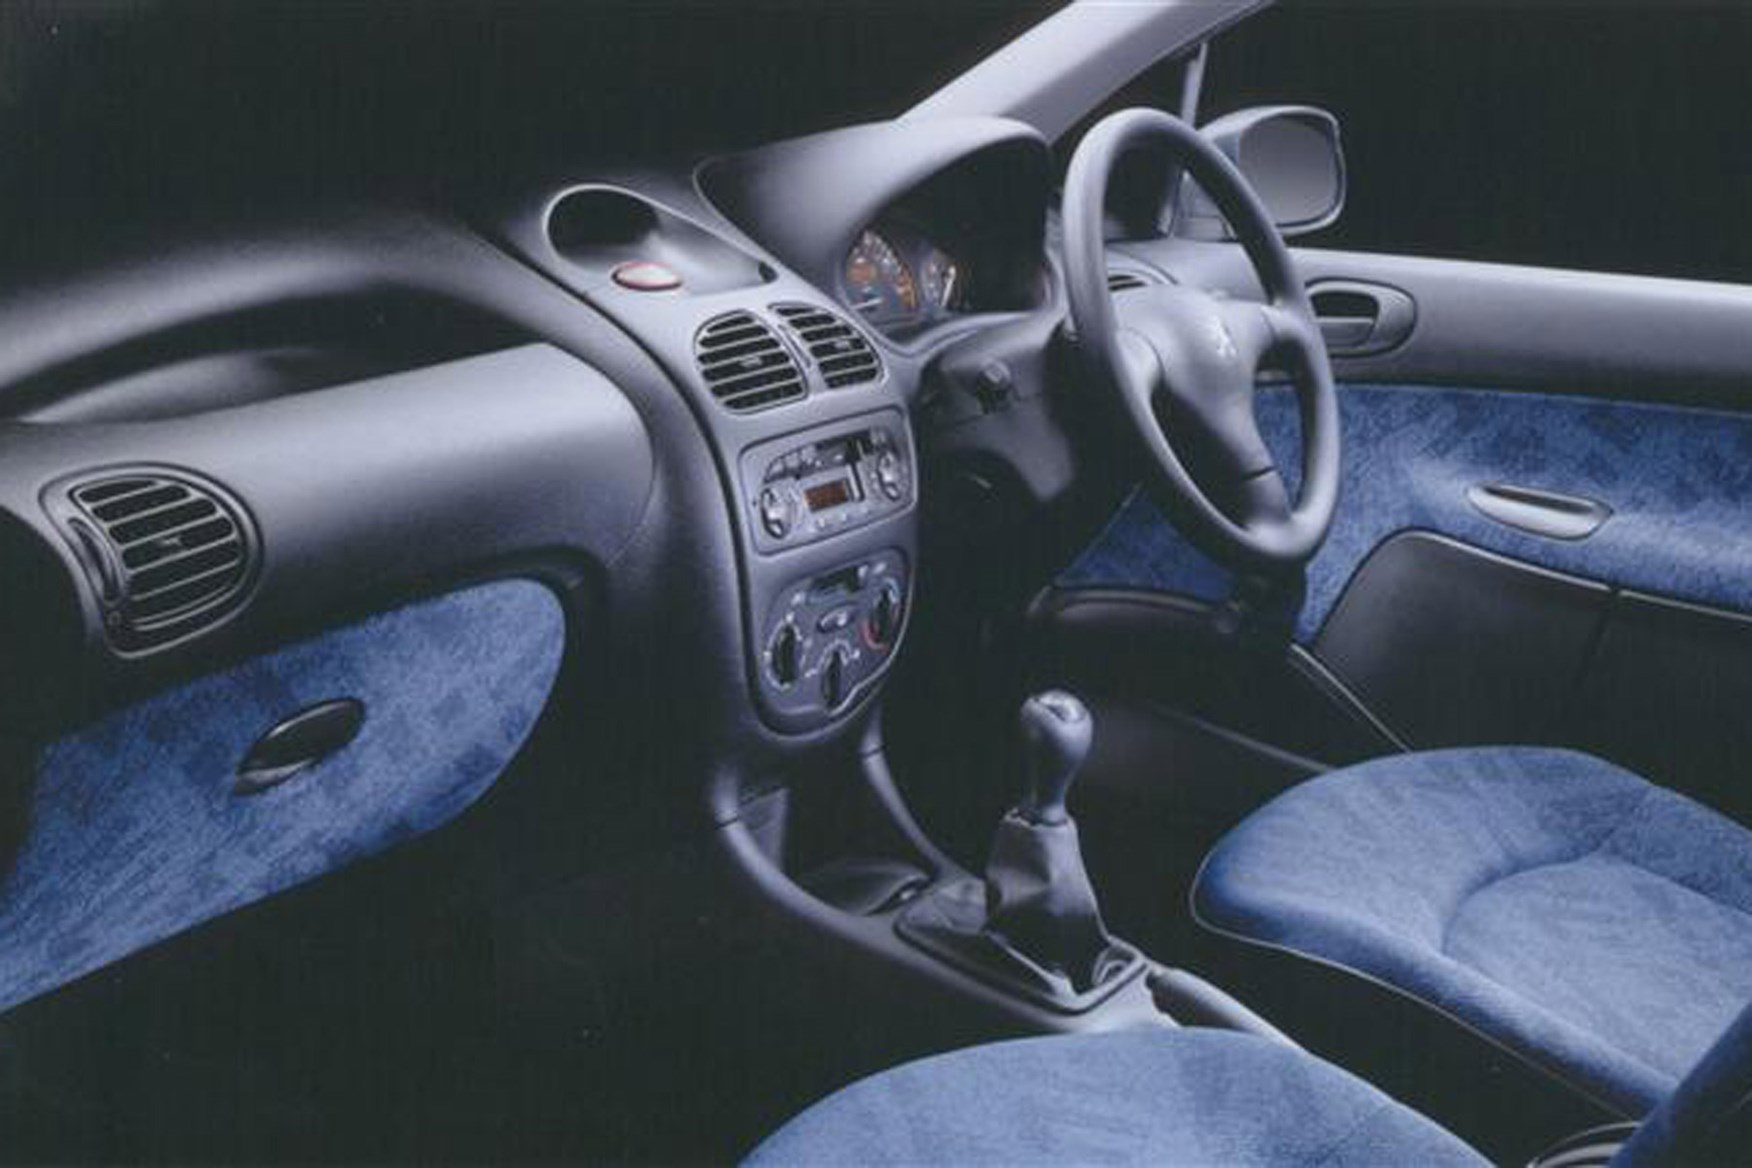 Peugeot 206 Van review on Parkers Vans - cabin, interior